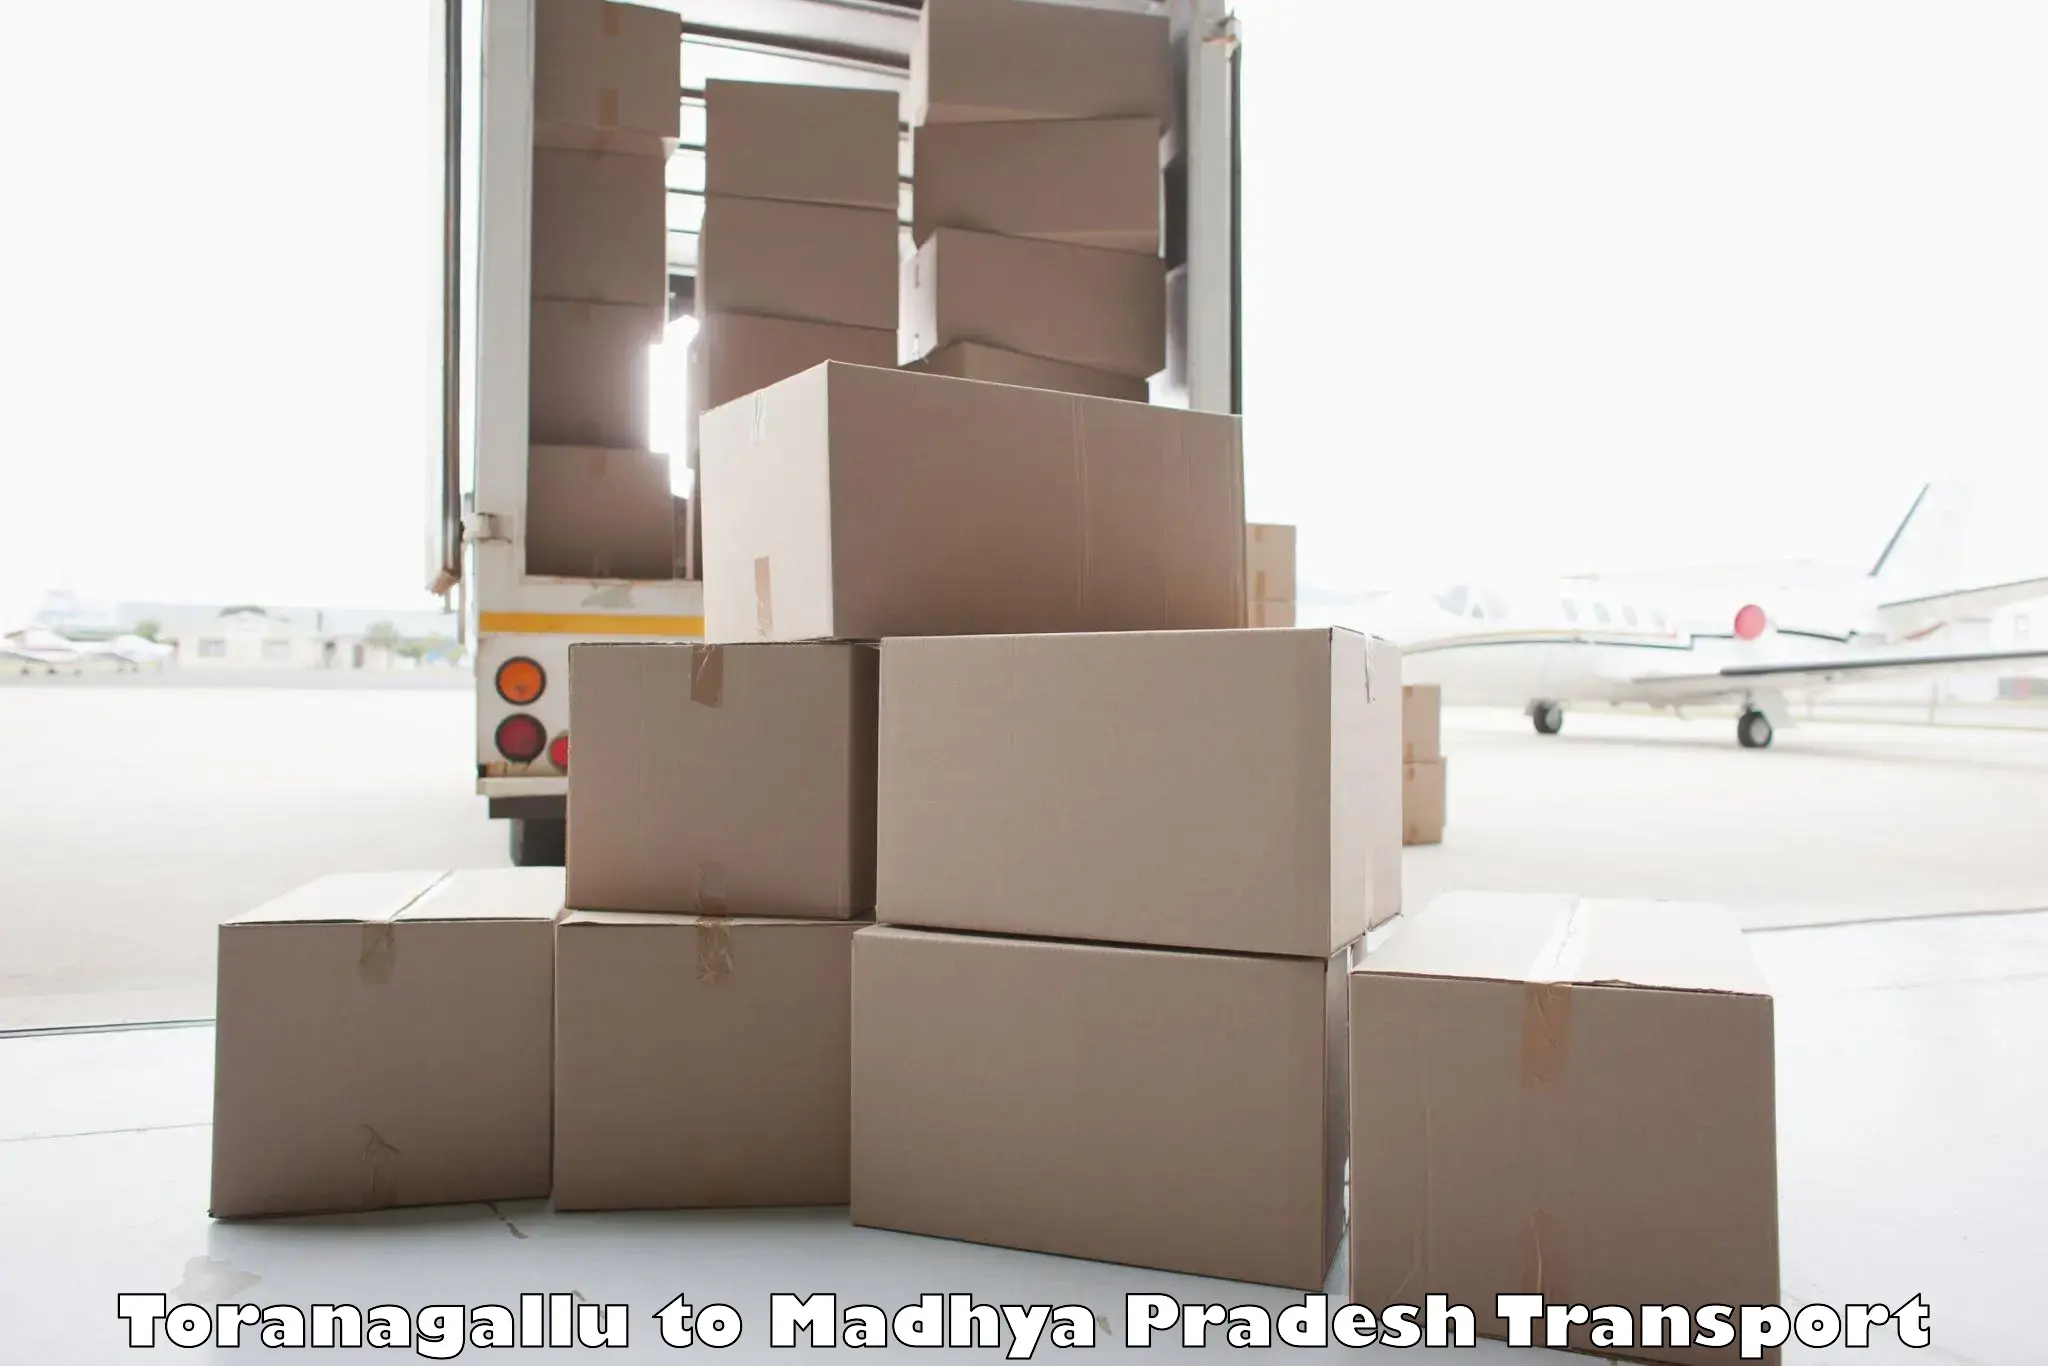 Furniture transport service in Toranagallu to Manasa